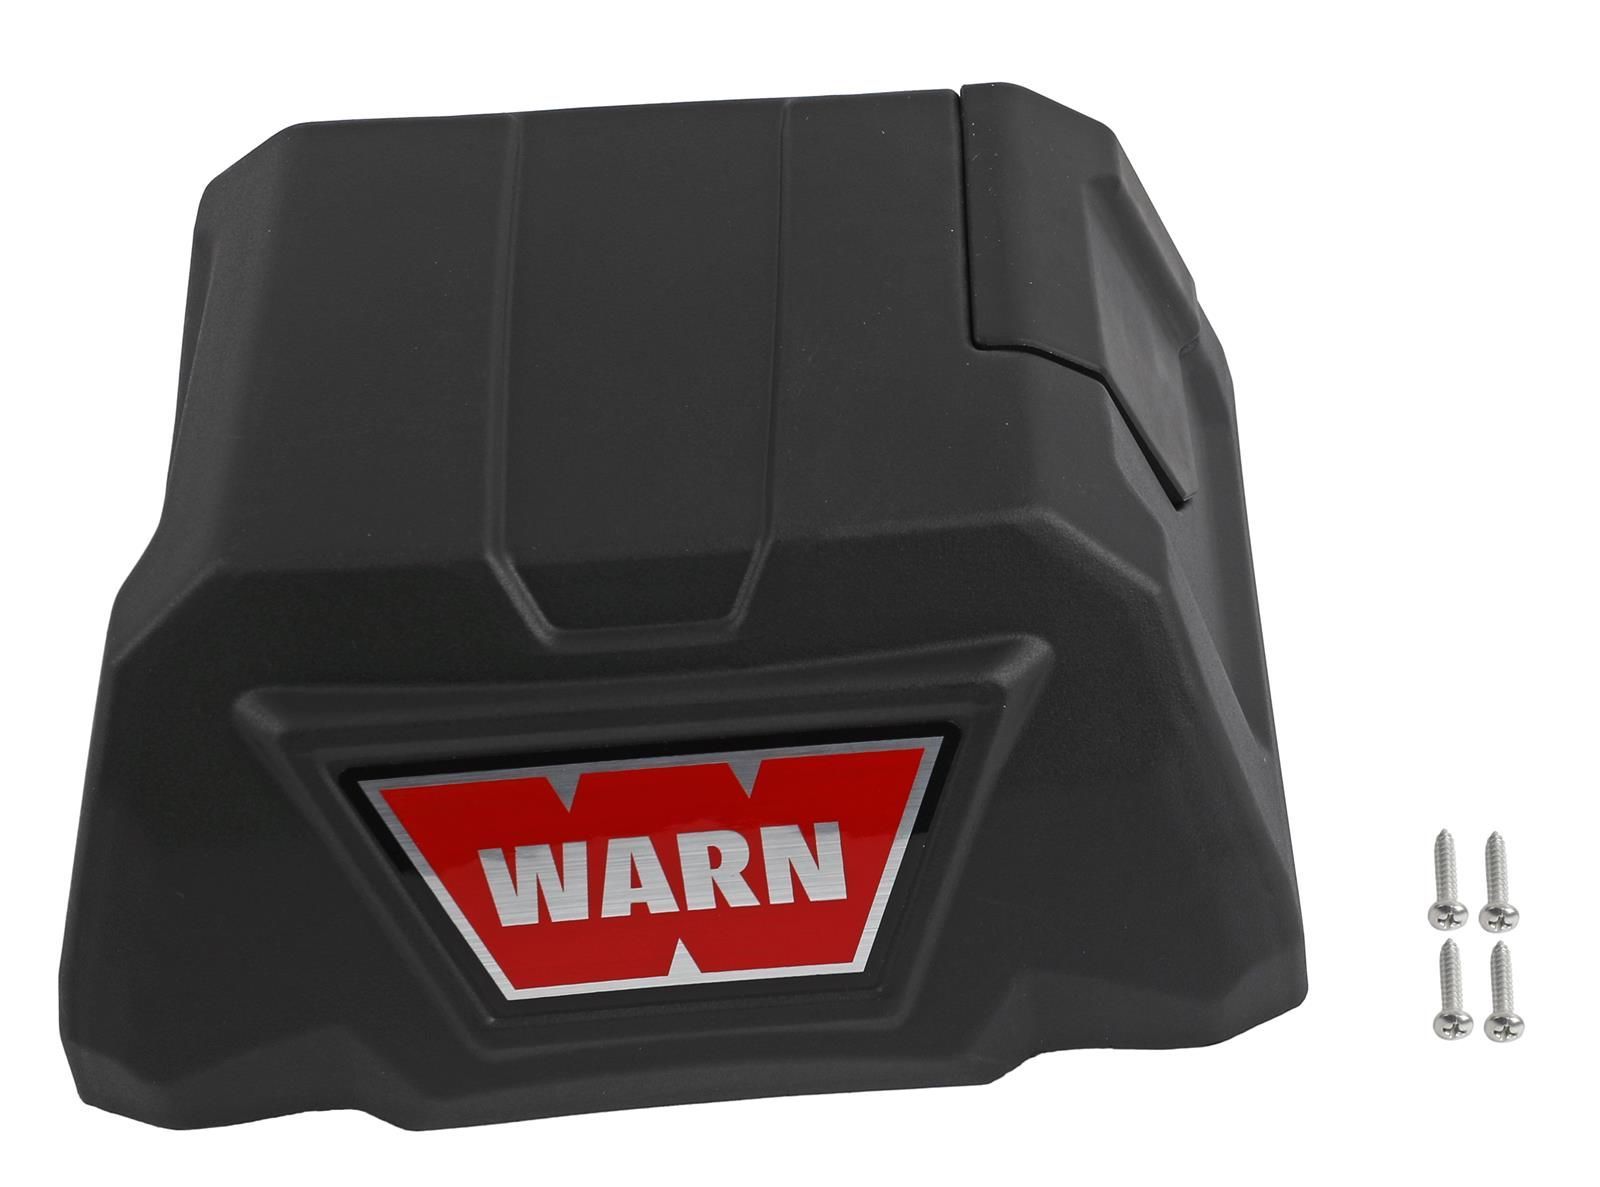 Warn 104222 VR EVO 10 ve 12 Vinç Solenoid Üst Kapağı